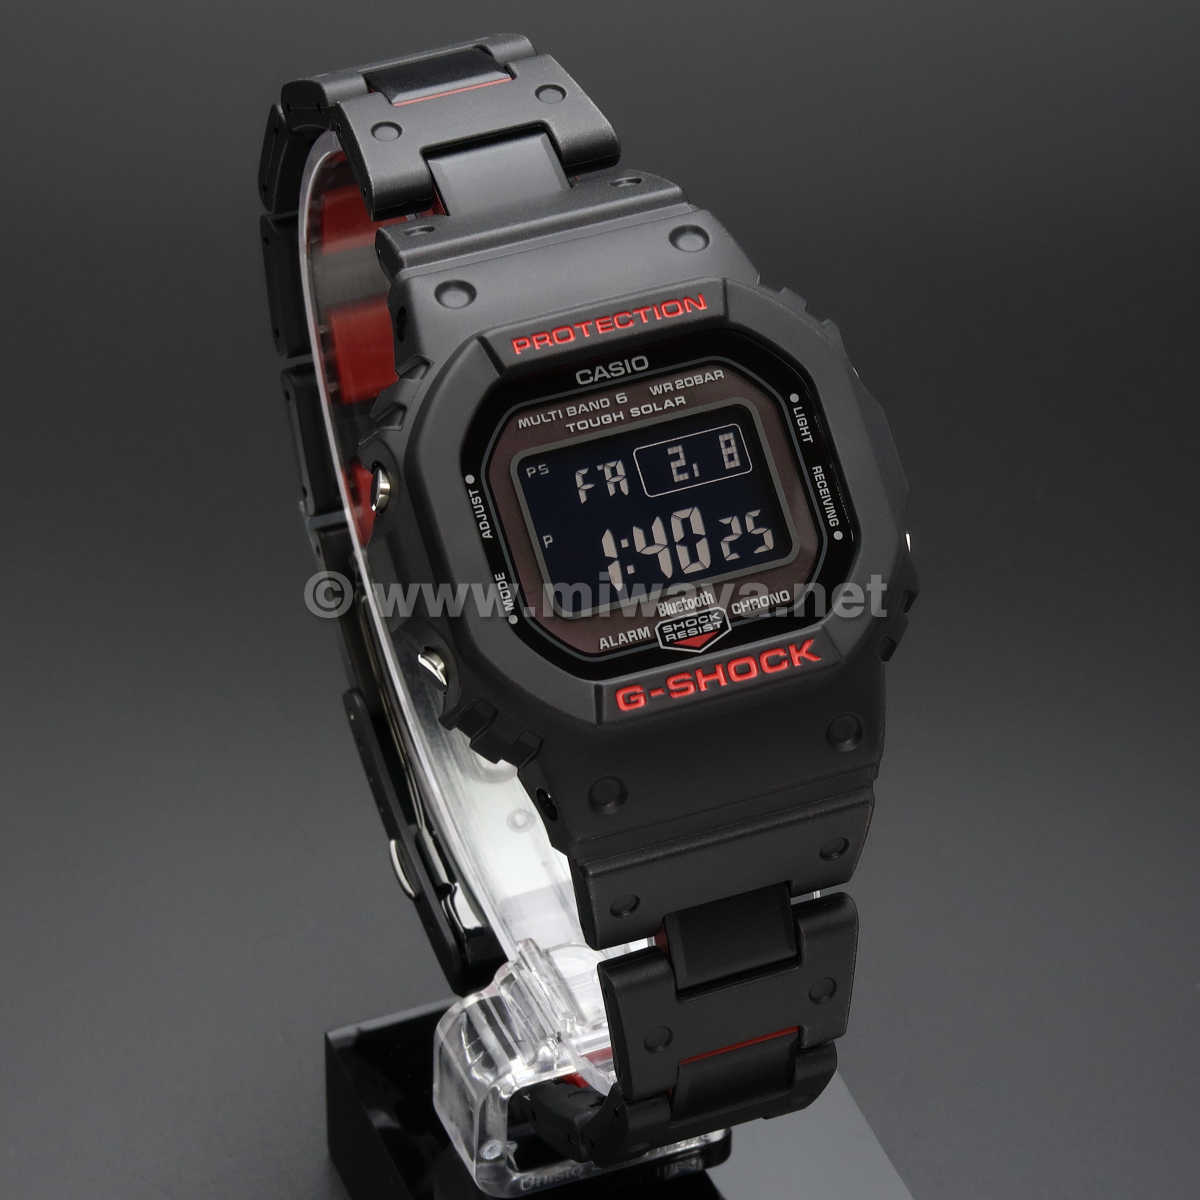 腕時計(デジタル)G-SHOCK カシオ GW-B5600HR-1JF ブラック